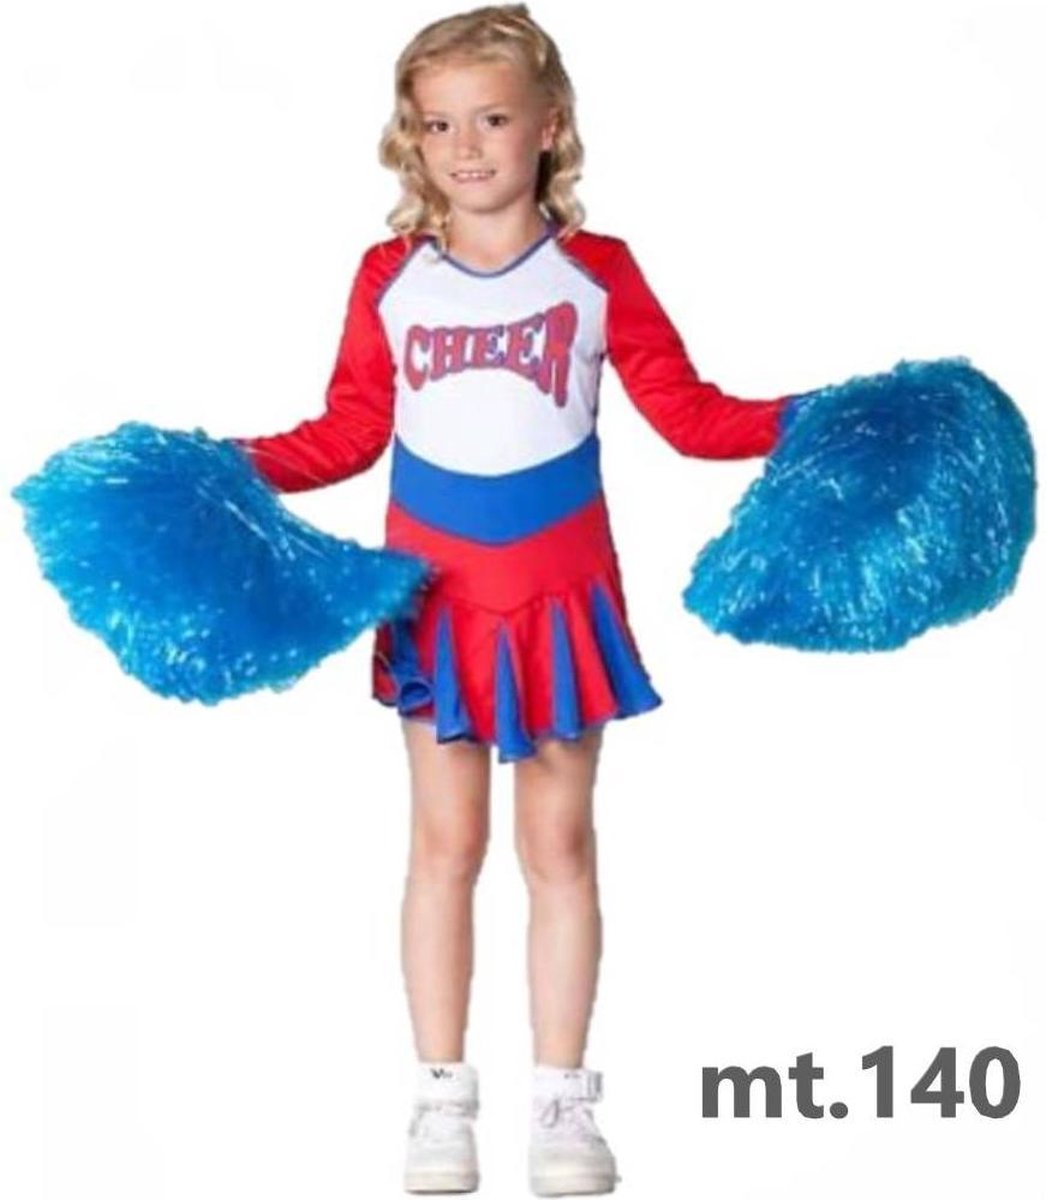 Witbaard - Kostuum - Cheerleader - Rood/wit/blauw - mt.140